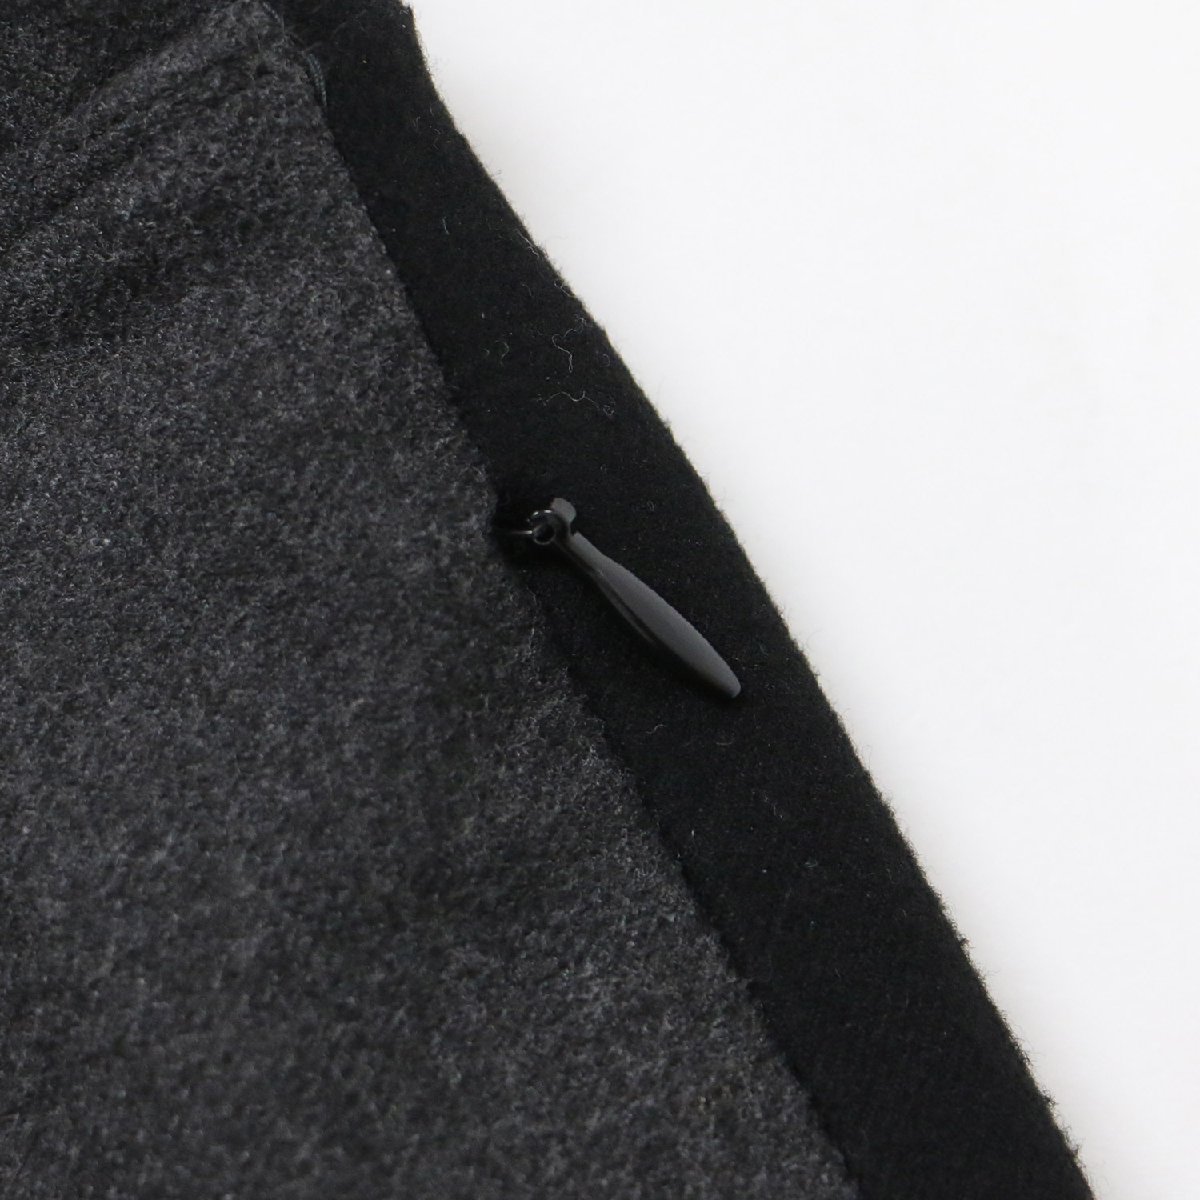 FLORENT Florent брюки широкий угольно-серый черный 34(XS) распорка боковой линия центральная стойка n tuck низ брюки 